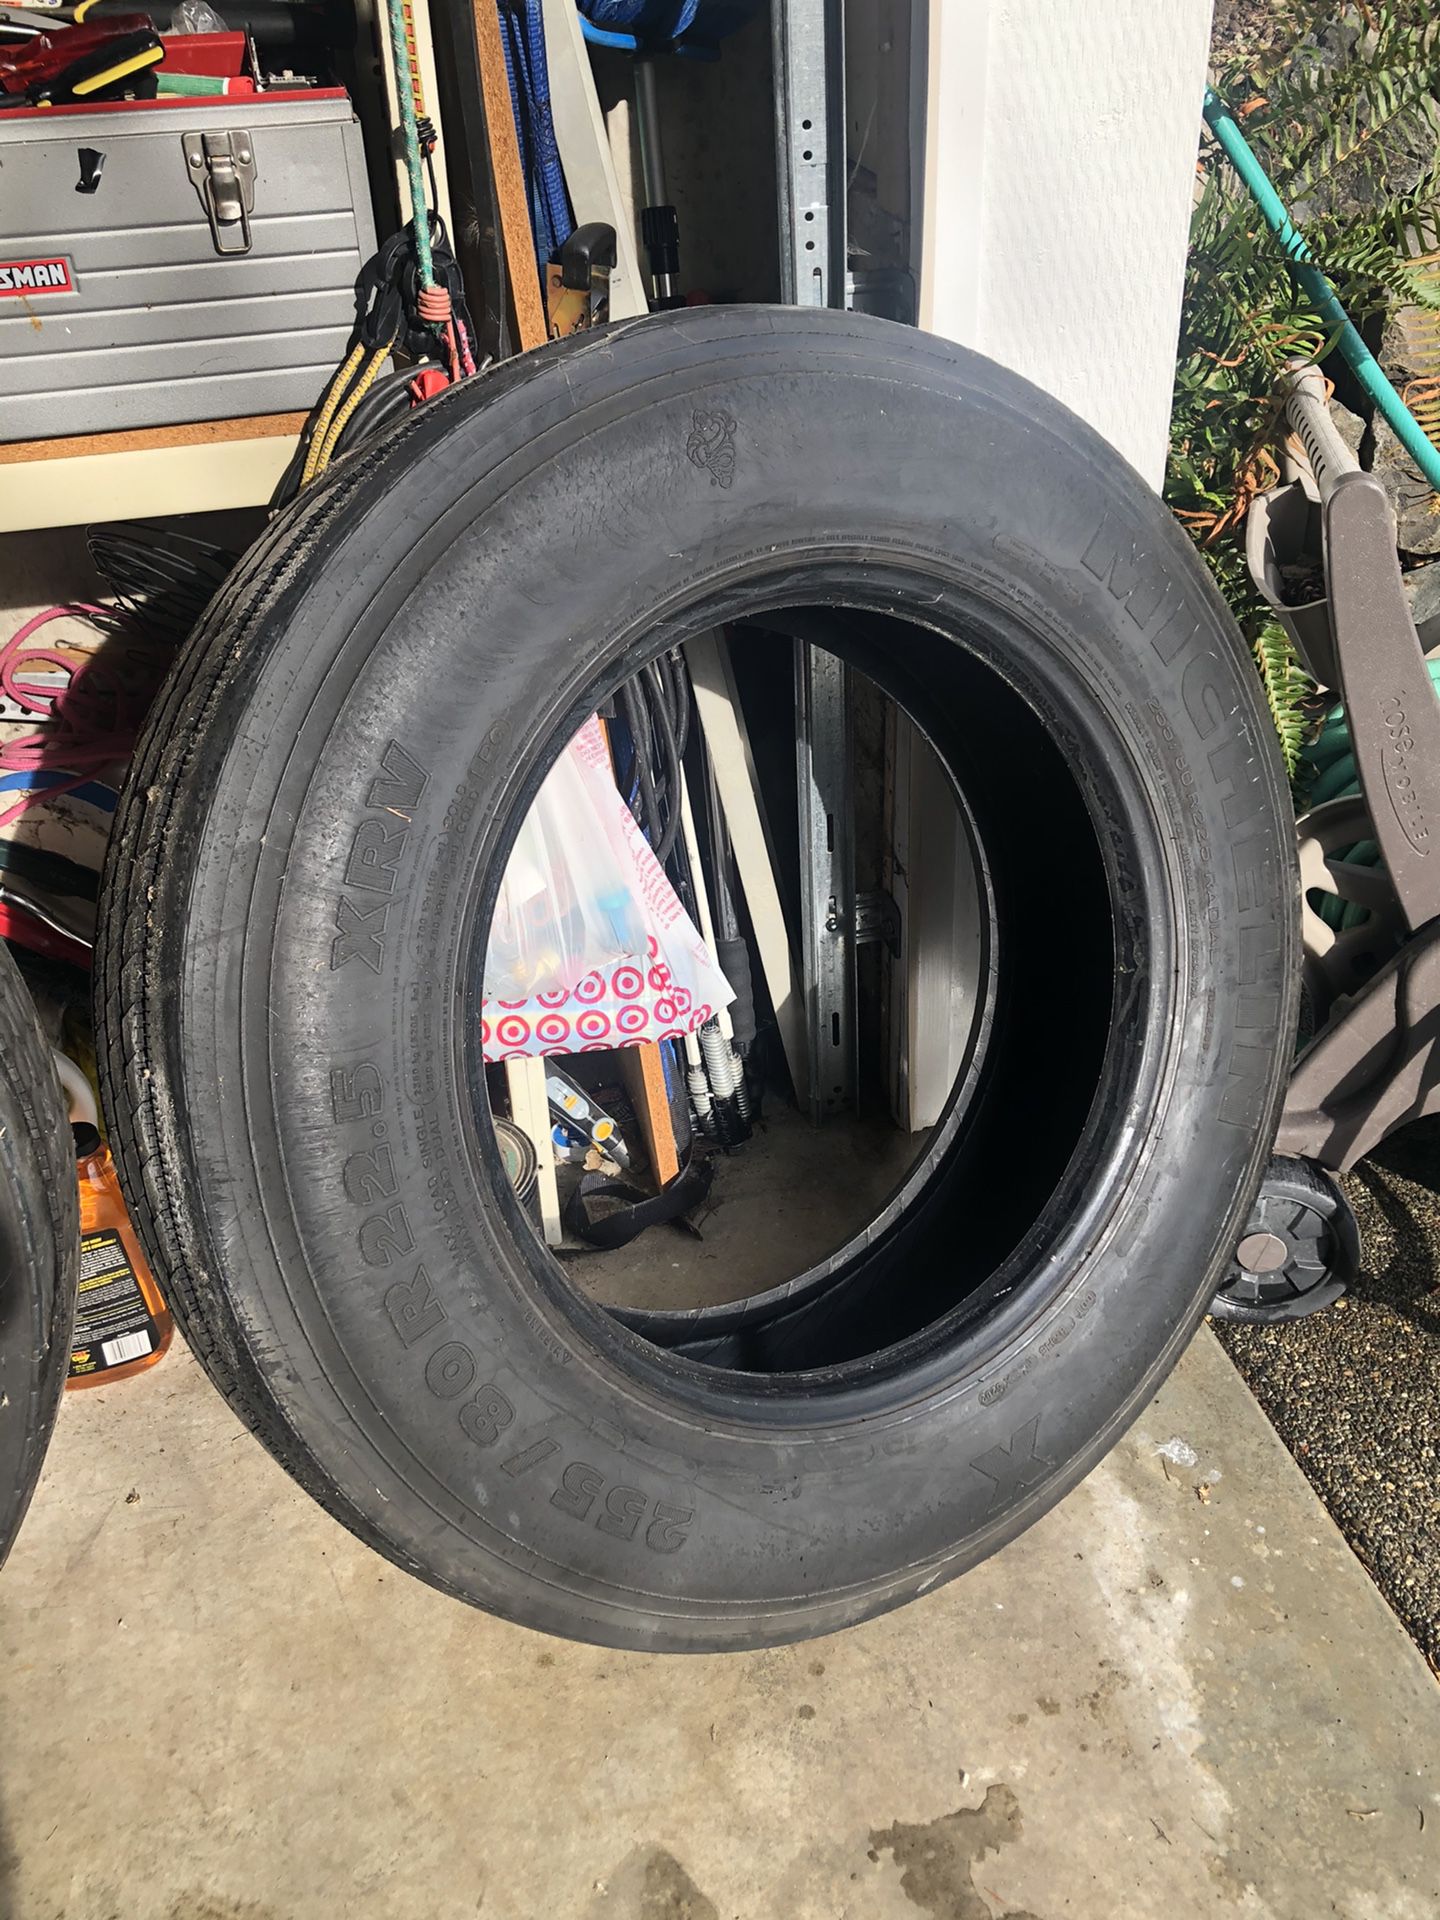 2 motorhome tires